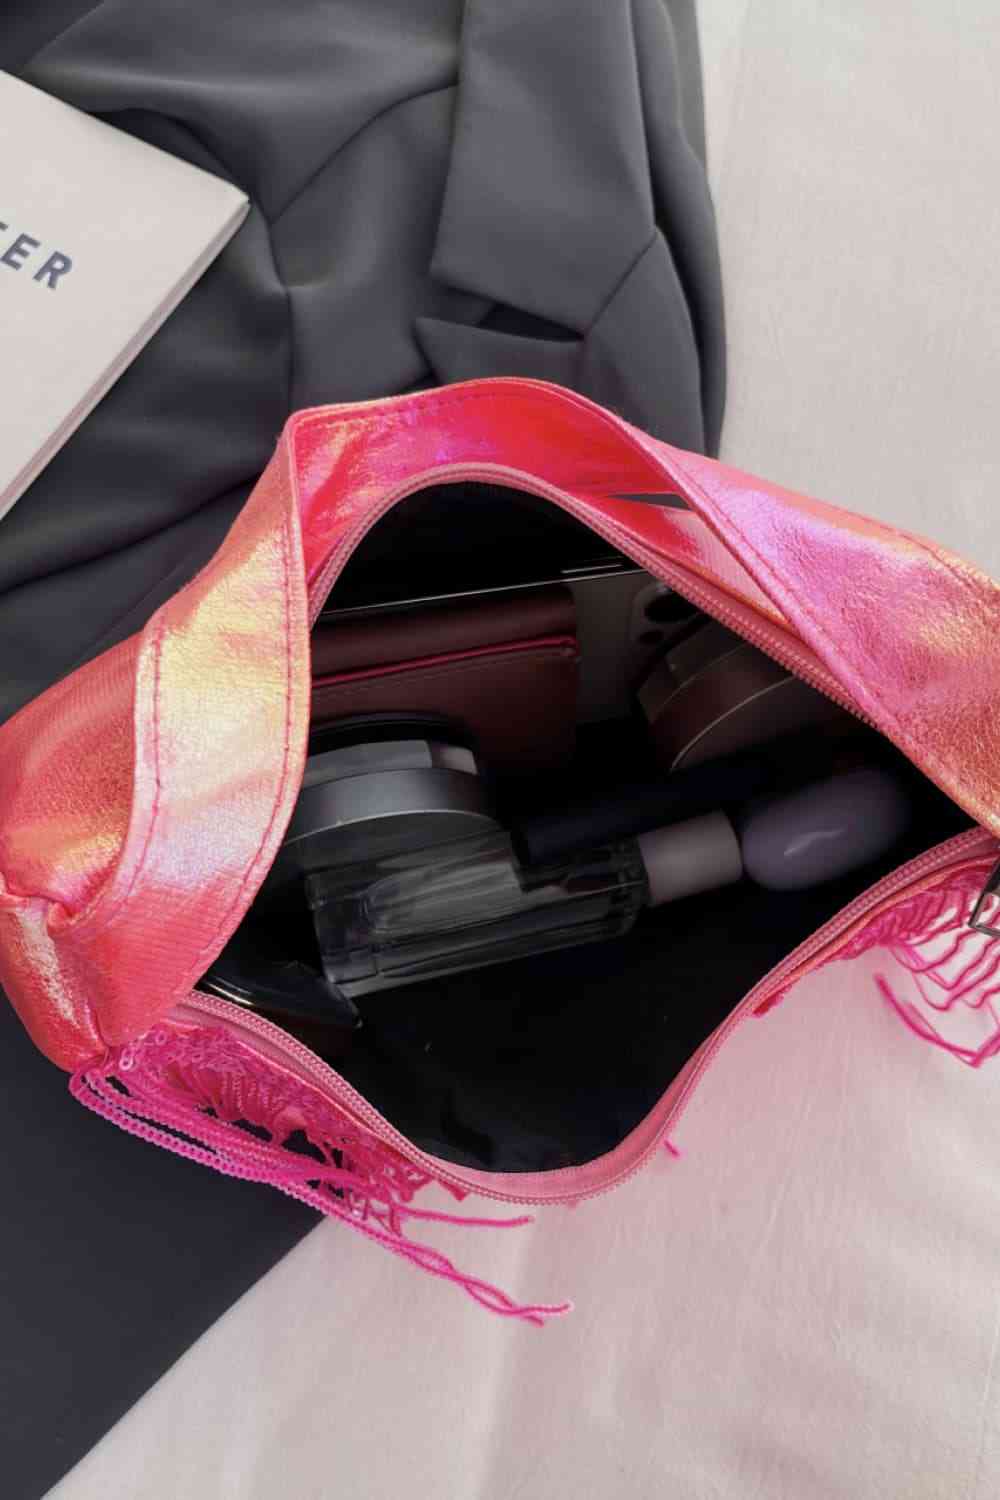 Fringe Detail Handbag | Sugarz Chique Boutique